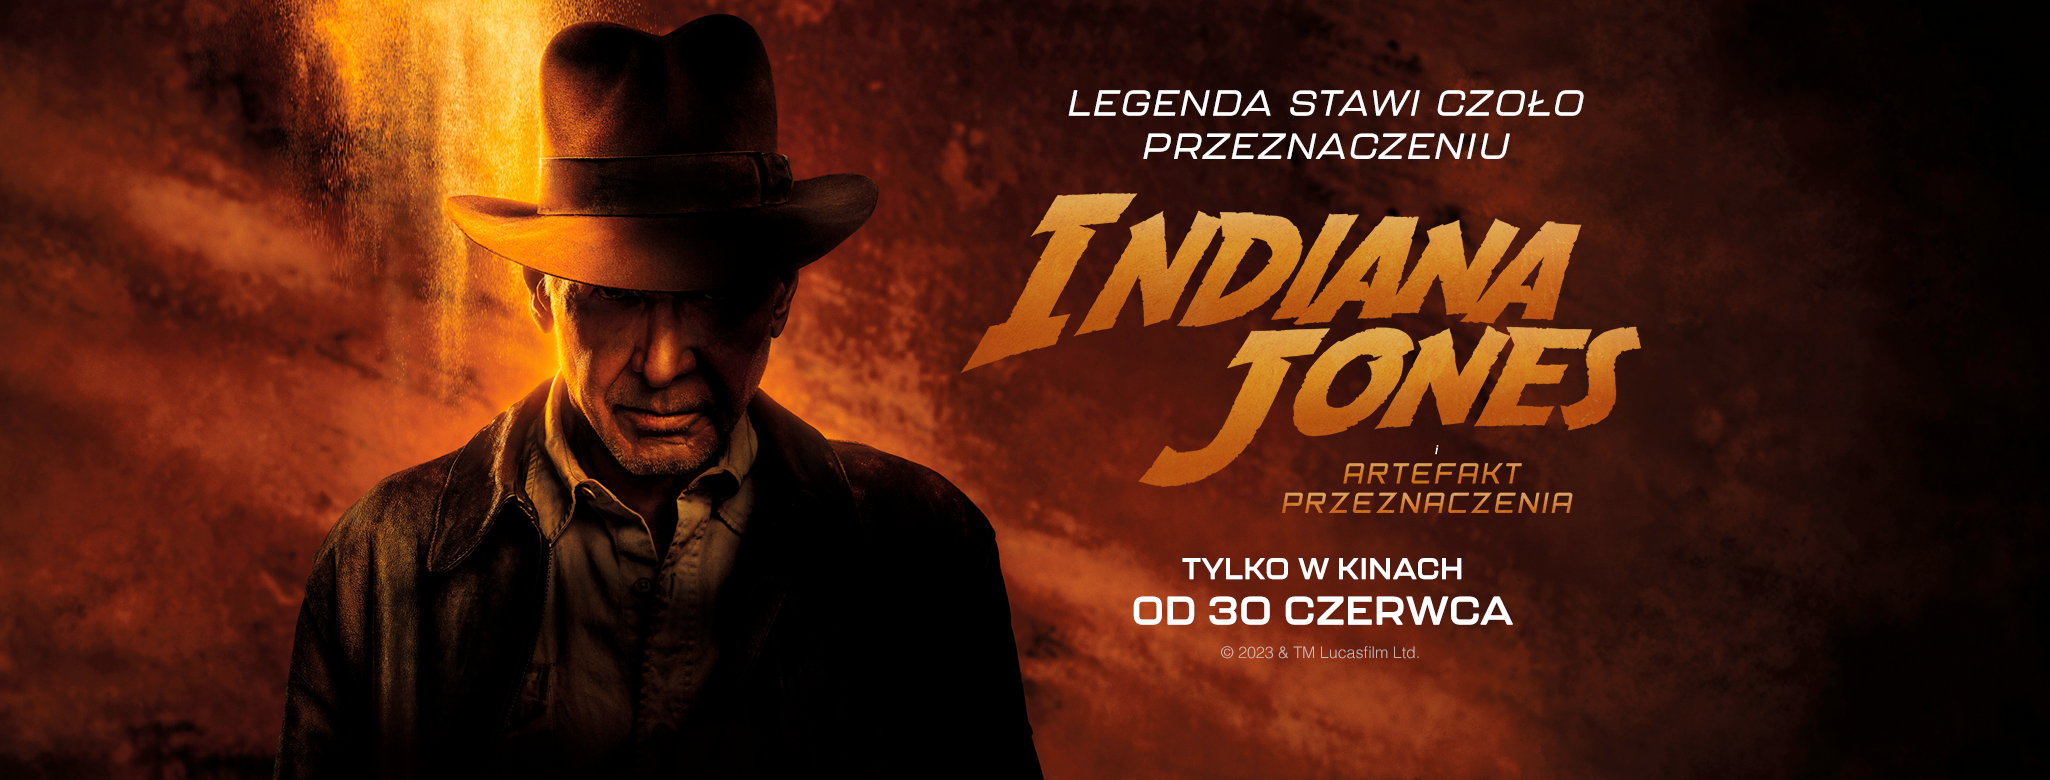 Indiana Jones i artefakt przeznaczenia - najbardziej wyczekiwany film ostatnich lat od 30 czerwca w kinach!